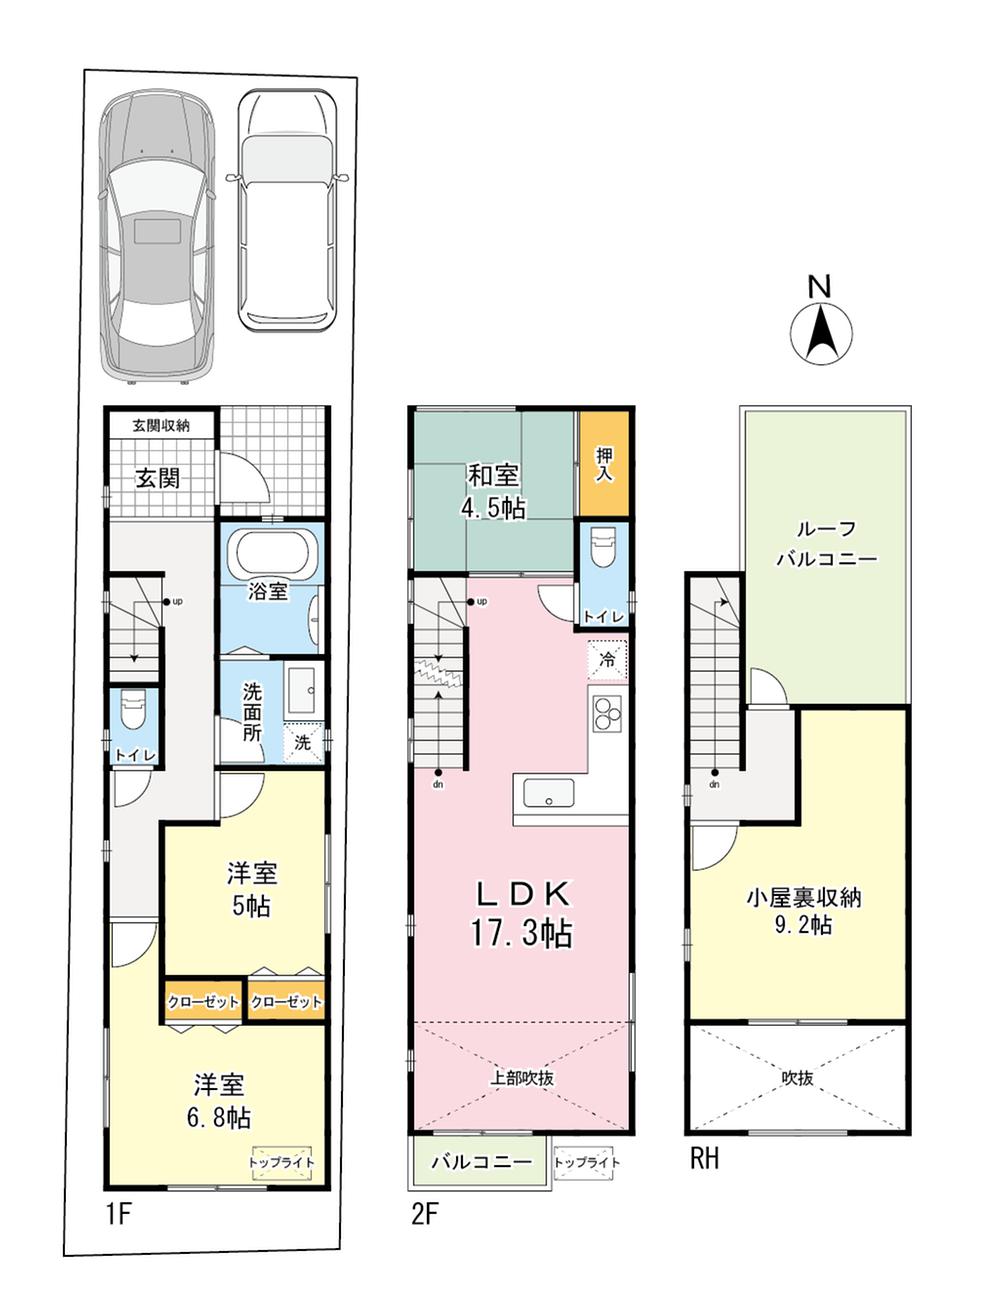 Floor plan. 62 million yen, 3LDK, Land area 86.22 sq m , Building area 89.39 sq m